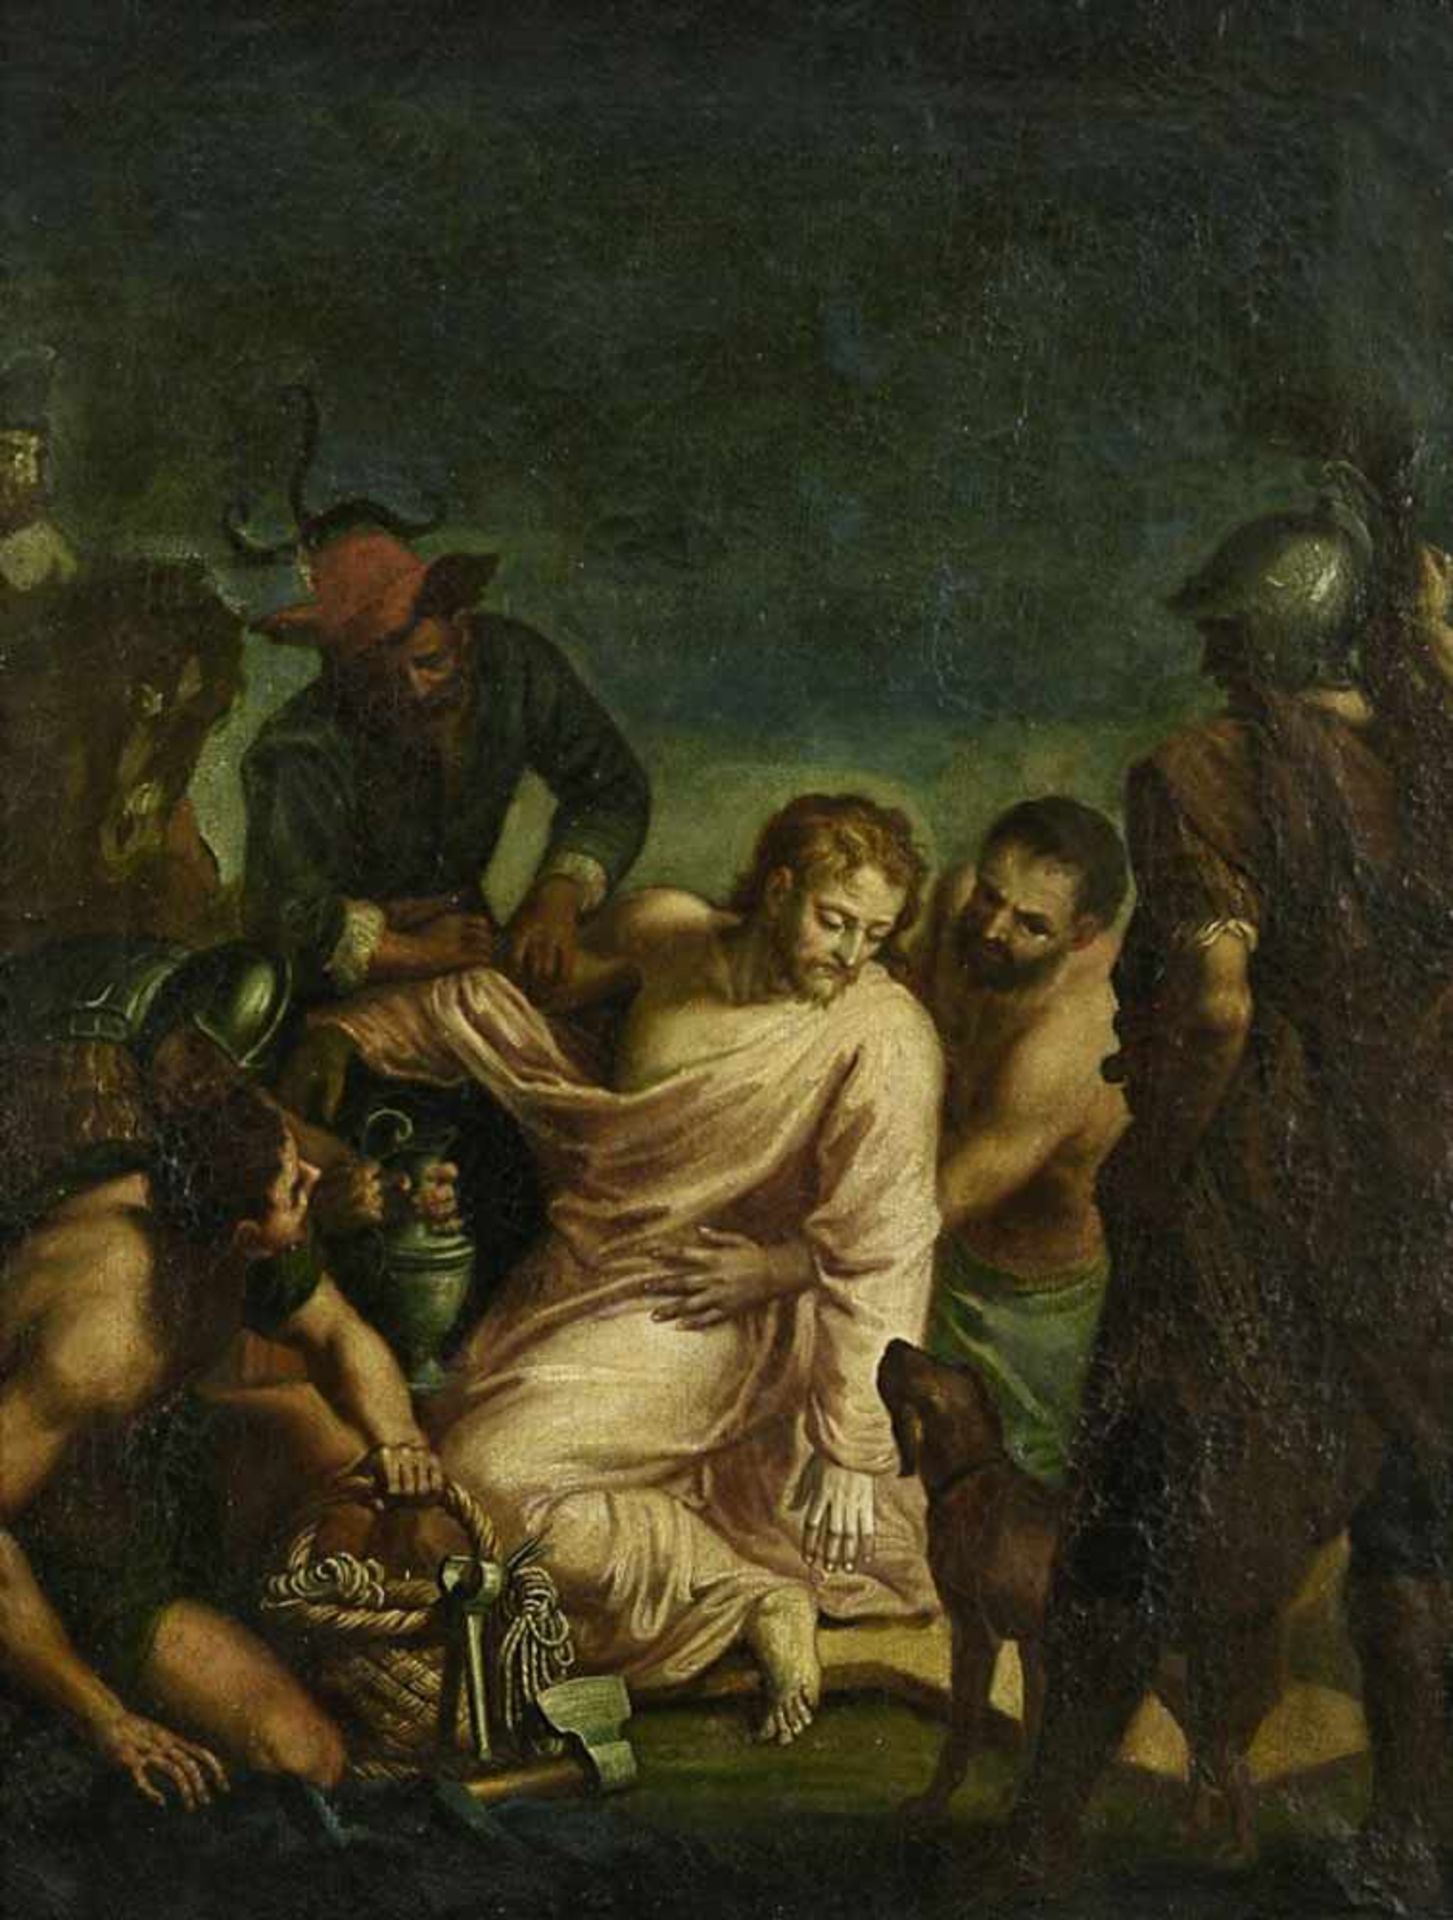 Unbekannt wohl 18. Jh. Jesus wird seiner Kleider beraubt (Mt 27,33-36) Öl/Lwd. 55 x 42 cm. - Bild 2 aus 2